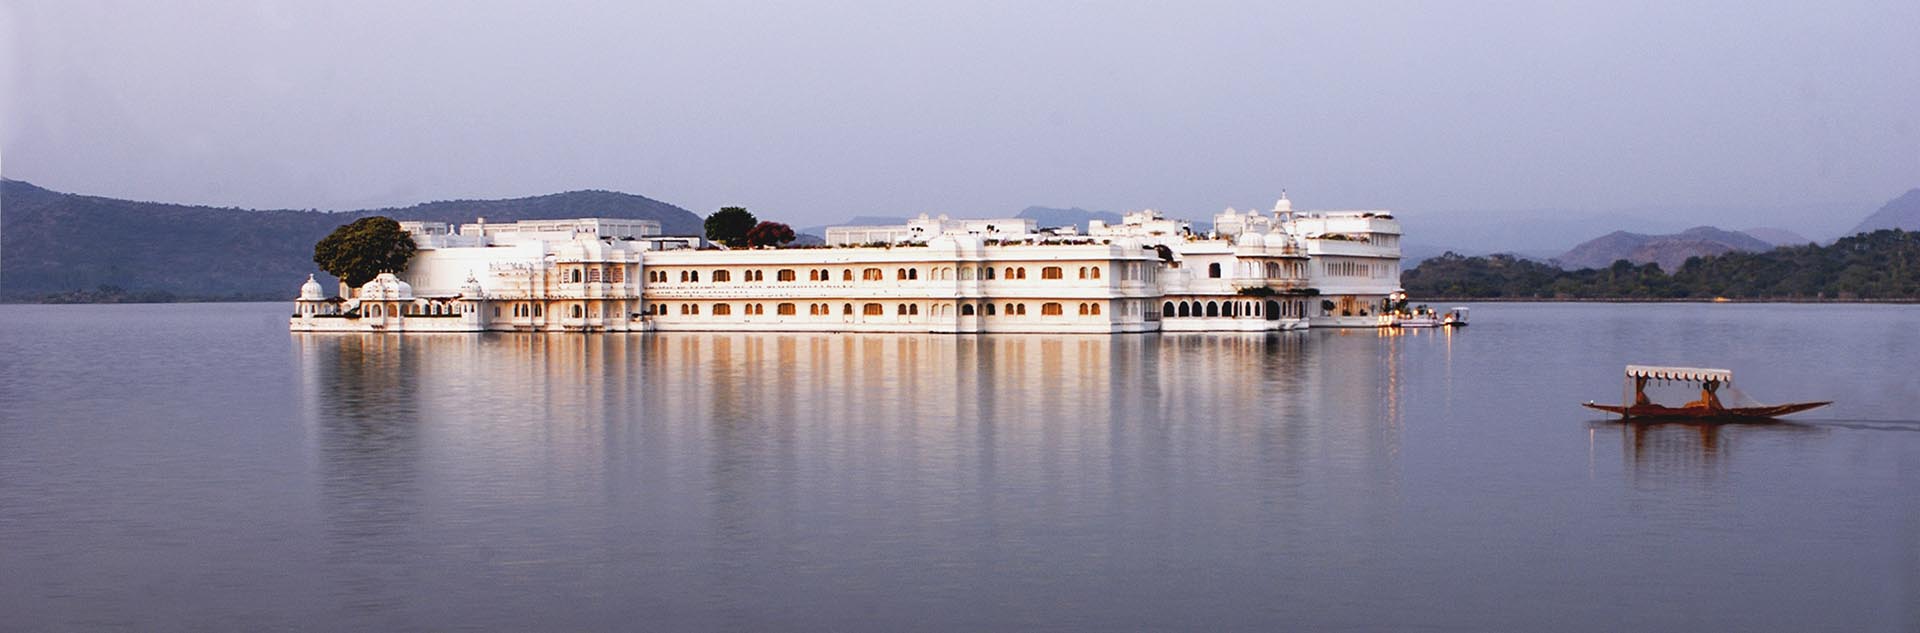 Lake-Palace-udaipur.jpg